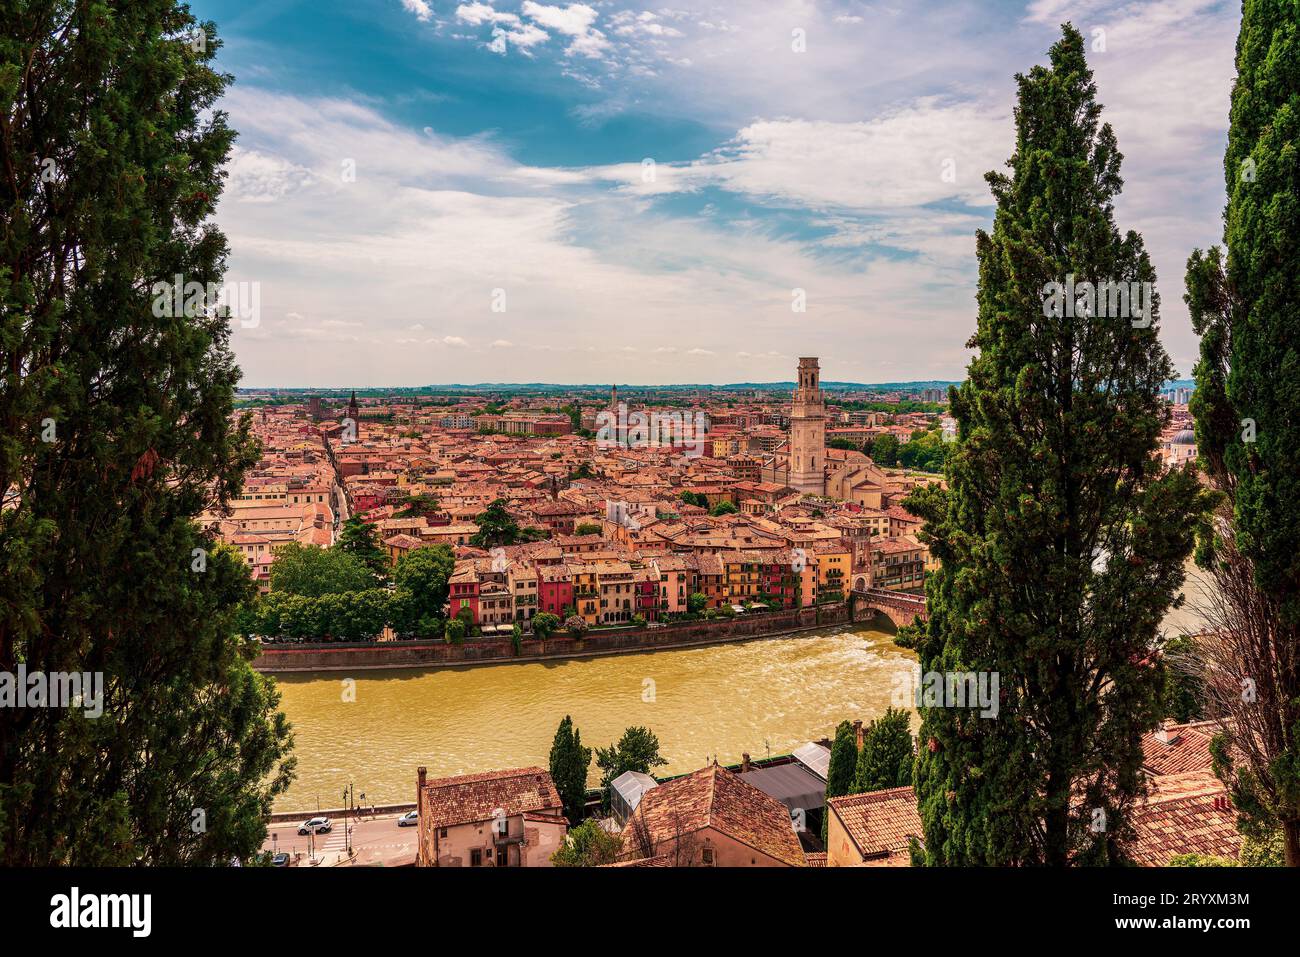 Vista panoramica del centro storico di Verona in Italia. Foto Stock